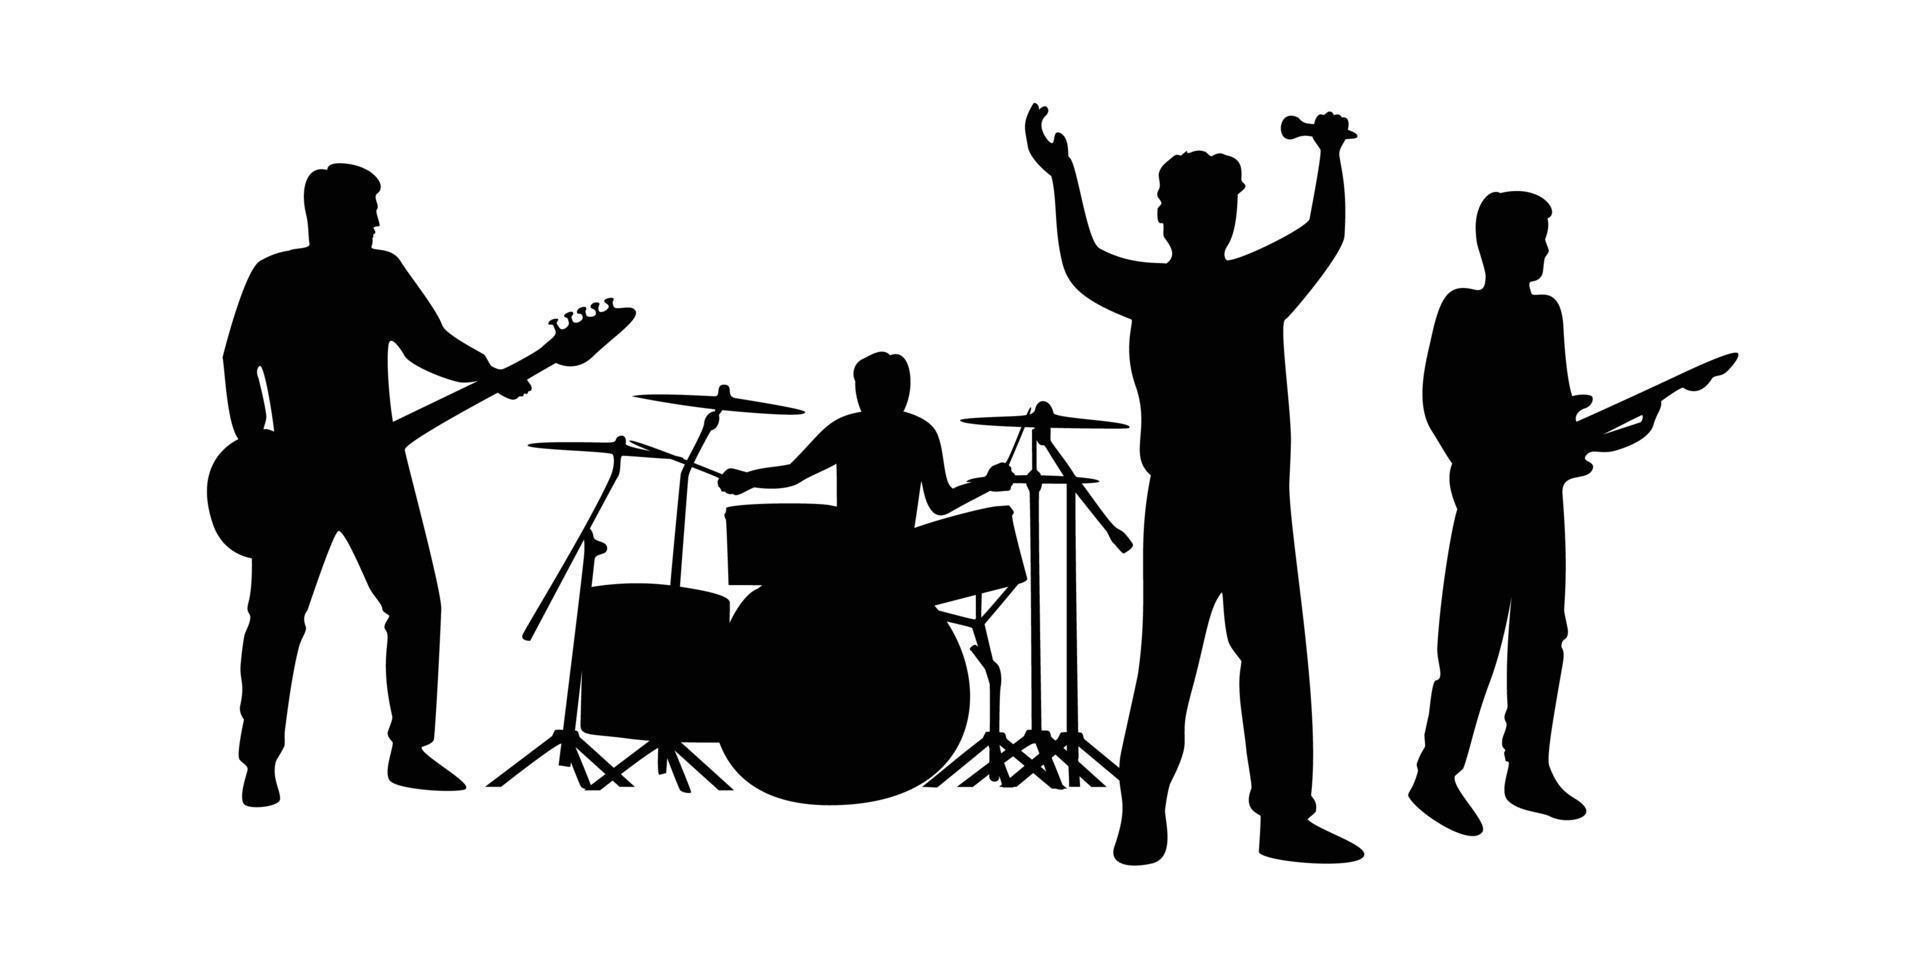 gruppo musicale silhouette design. musica concerto vettore illustrazione.